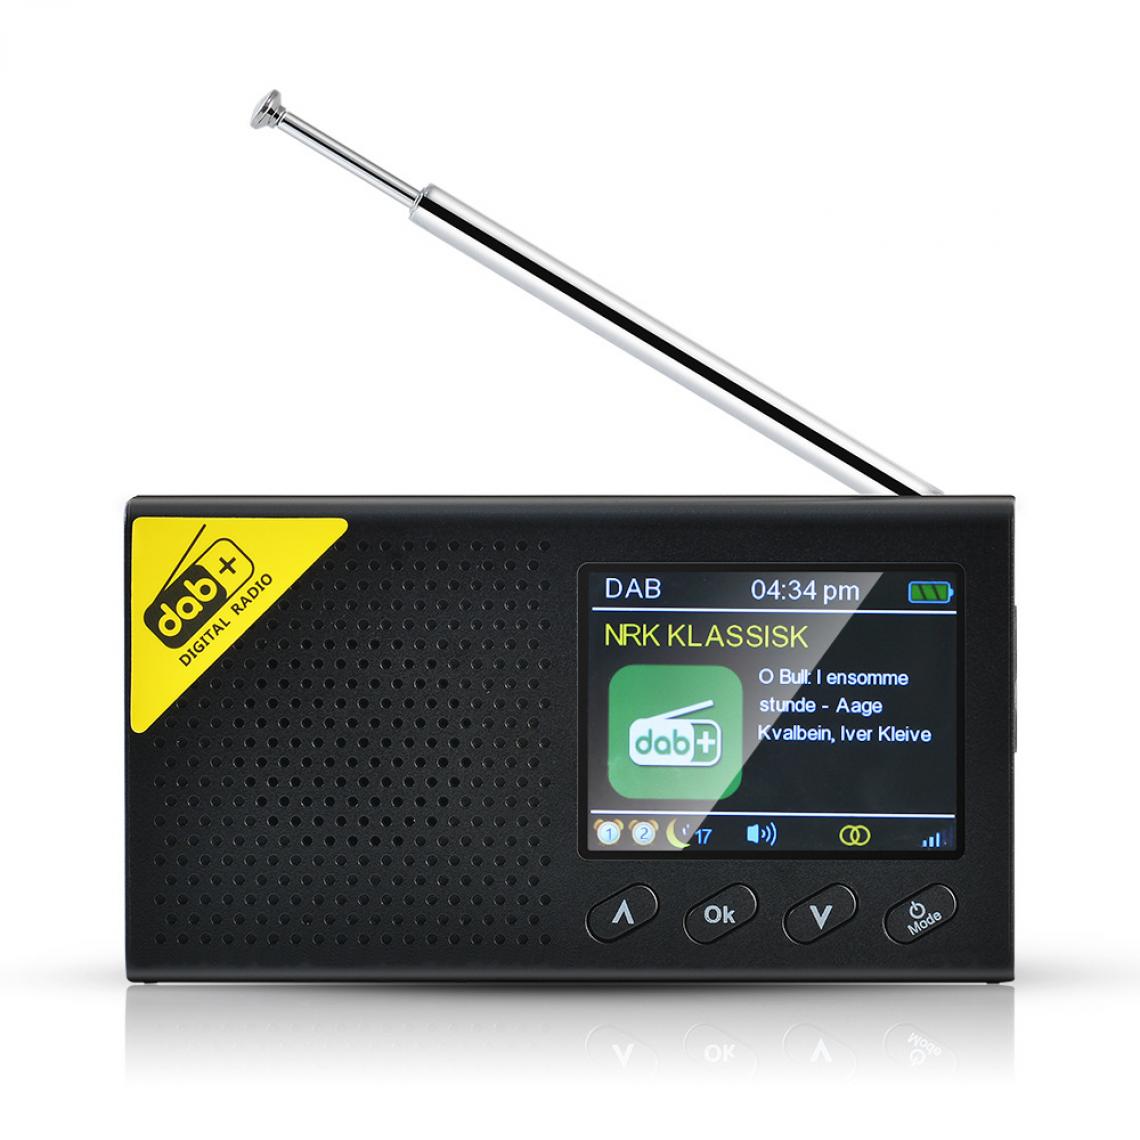 Universal - Radio portable 5.0 radio numérique stéréo DAB/DAB + haut-parleur stéréo extérieur domestique 2,4 pouces LCD radio FM rechargeable | - Radio